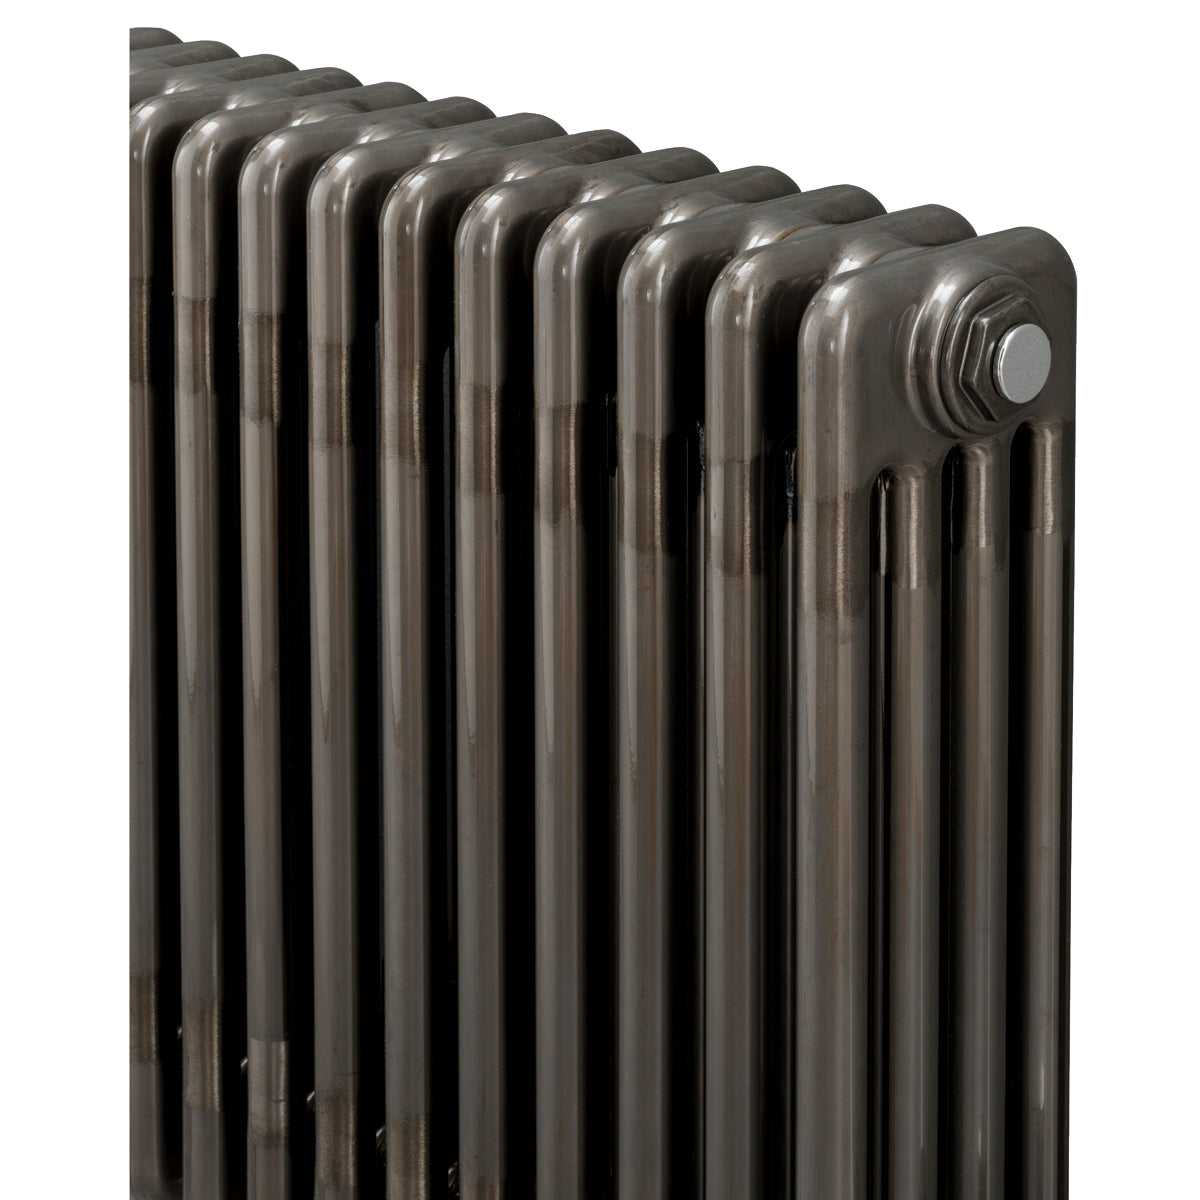 4 Column radiator